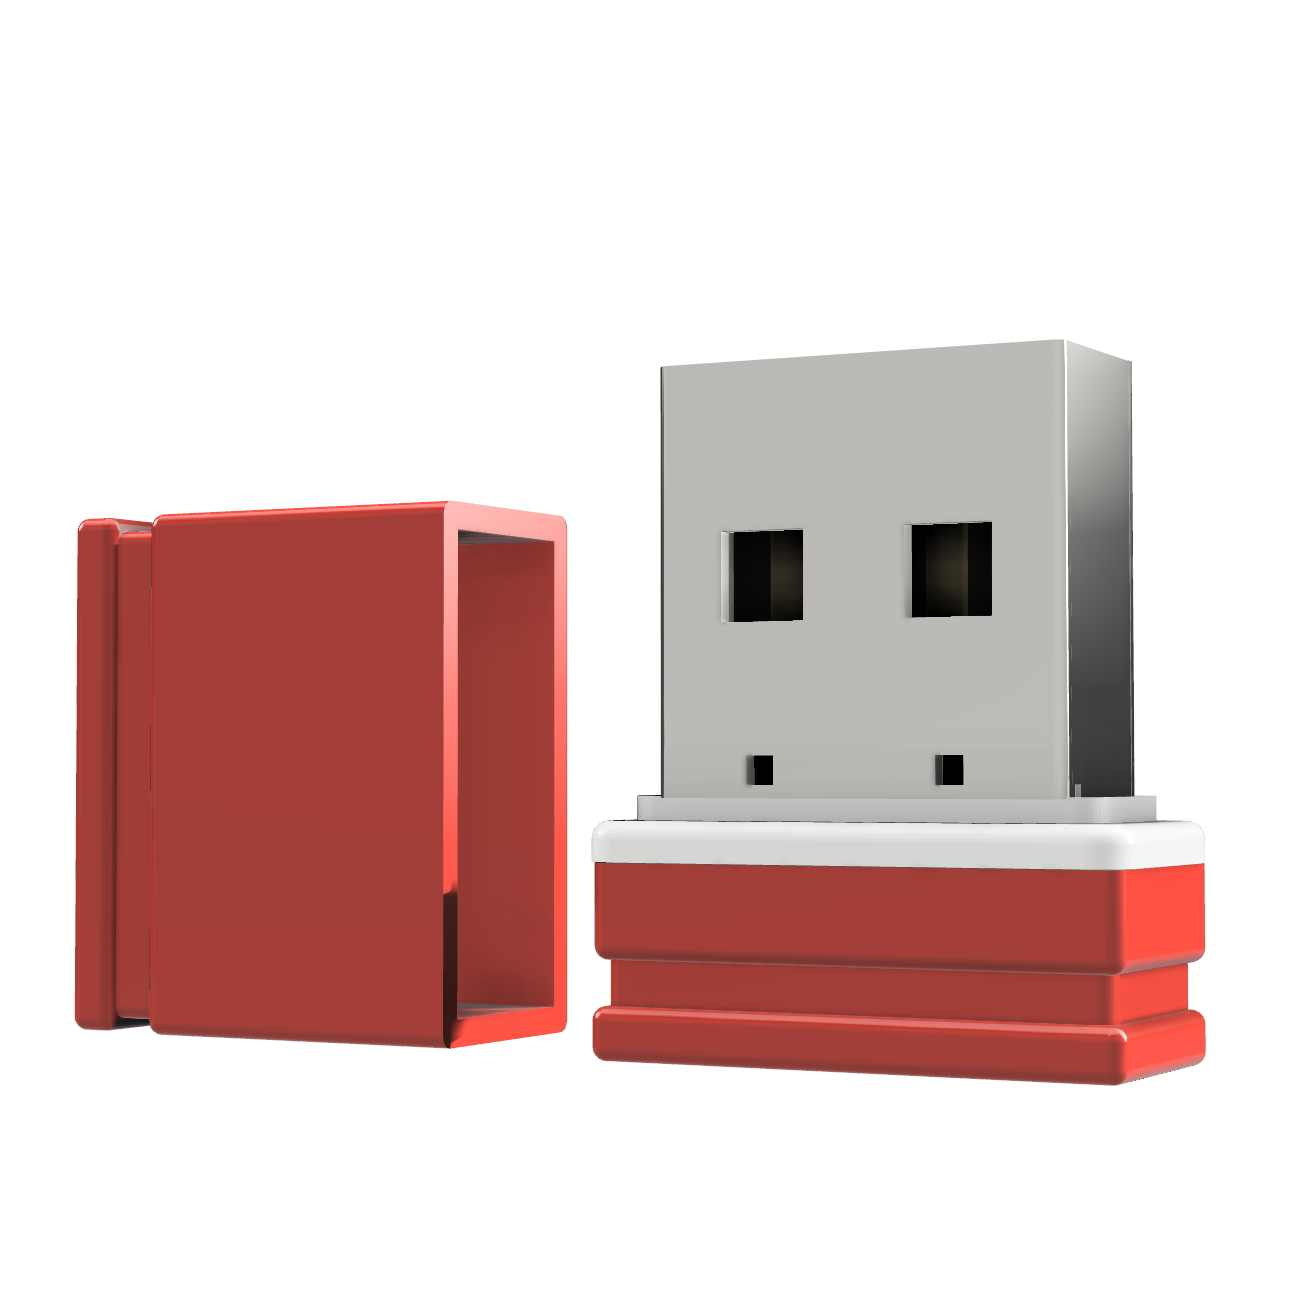 GB) GERMANY (Rot/Weiss, ®ULTRA USB 8 P1 Mini USB-Stick